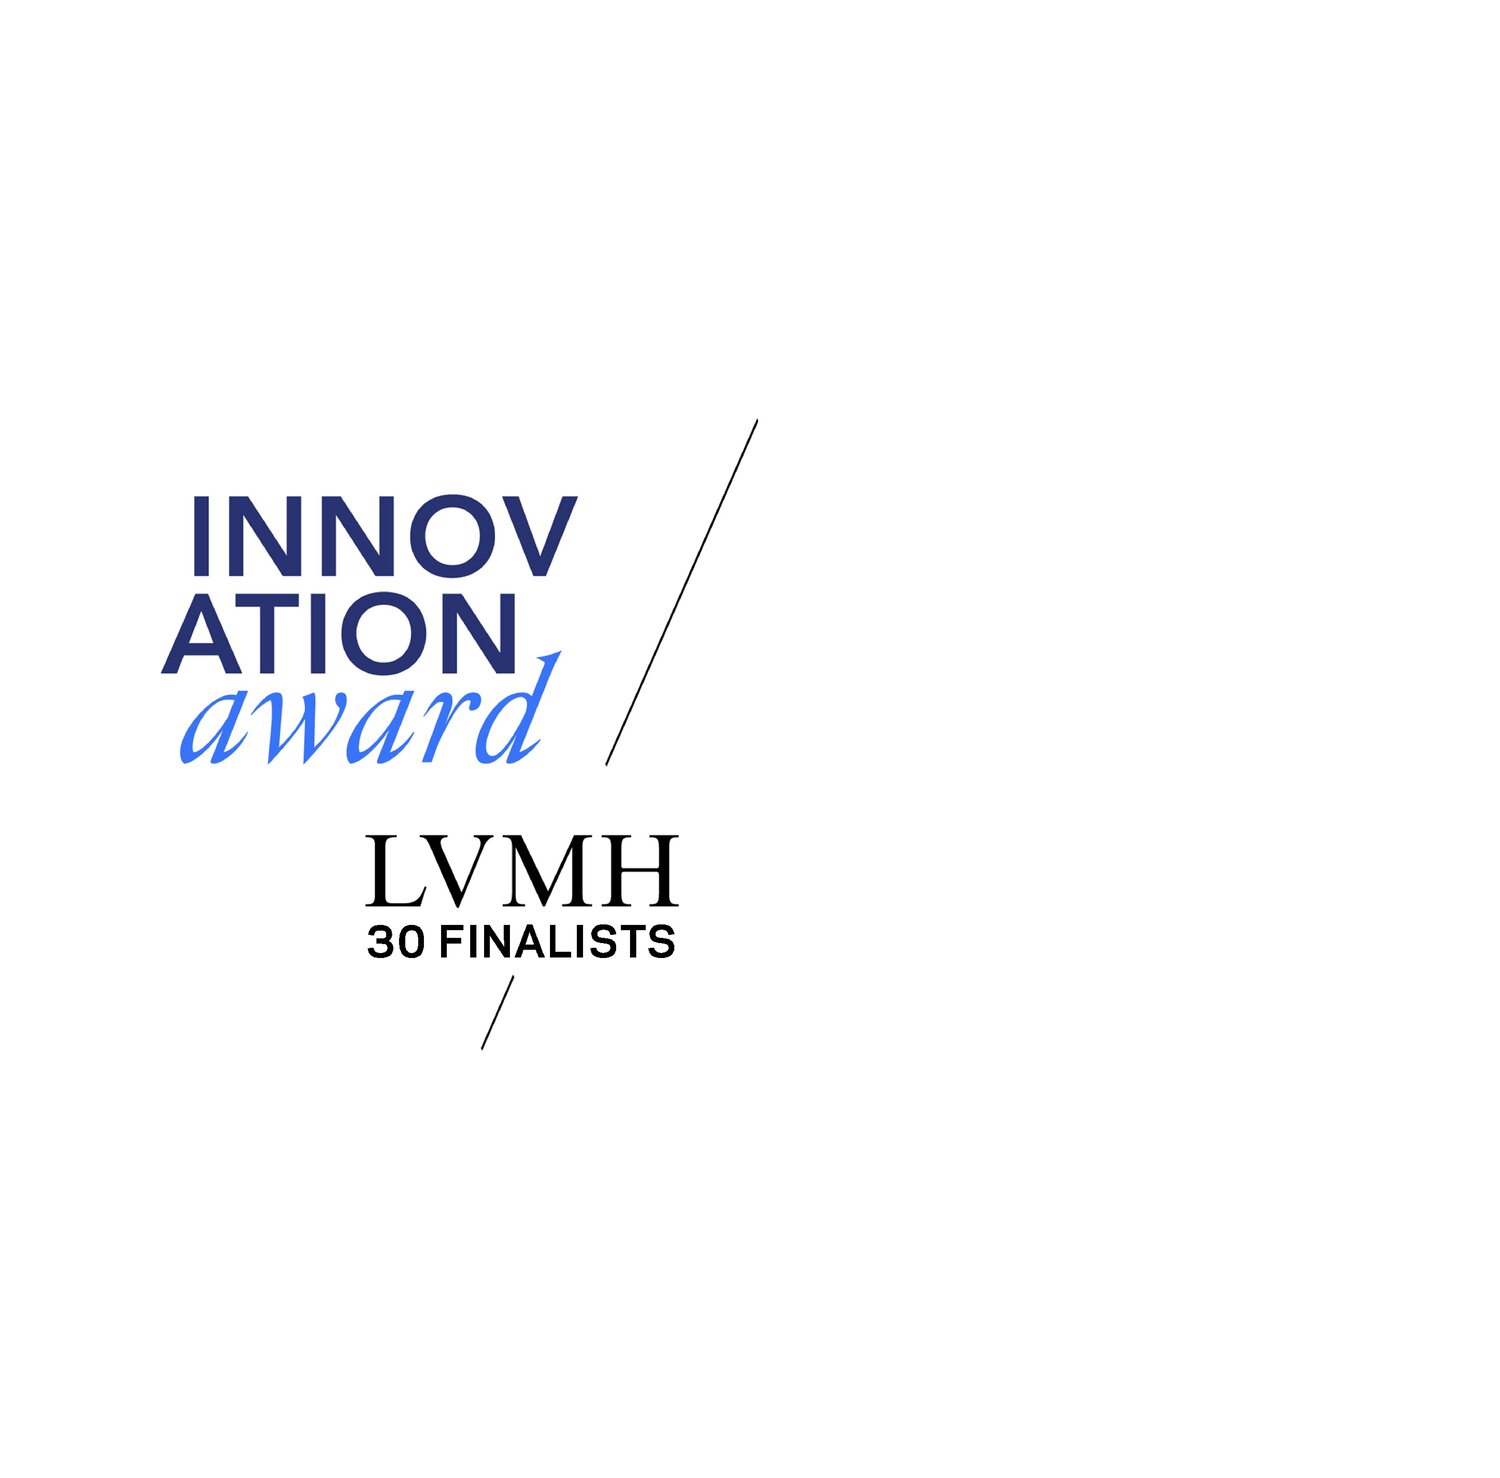 Moët Hennessy celebrates innovation - LVMH